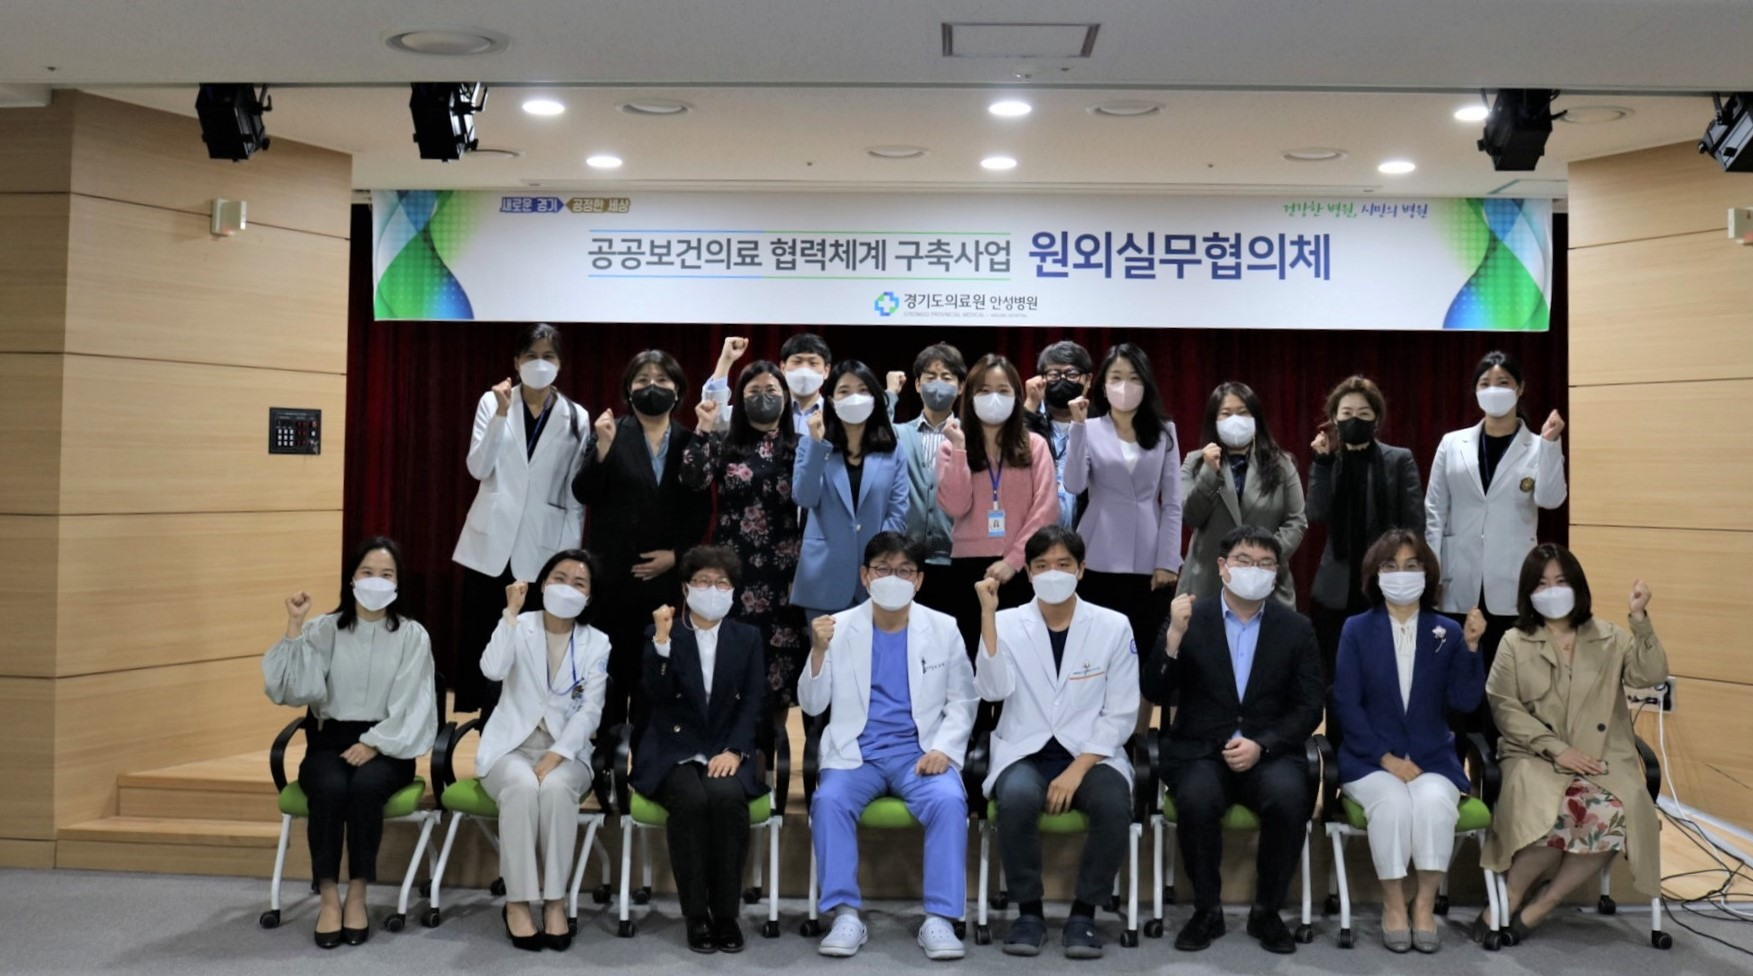 경기도의료원 안성병원, 지역책임의료기관 원외 실무협의체 회의 개최